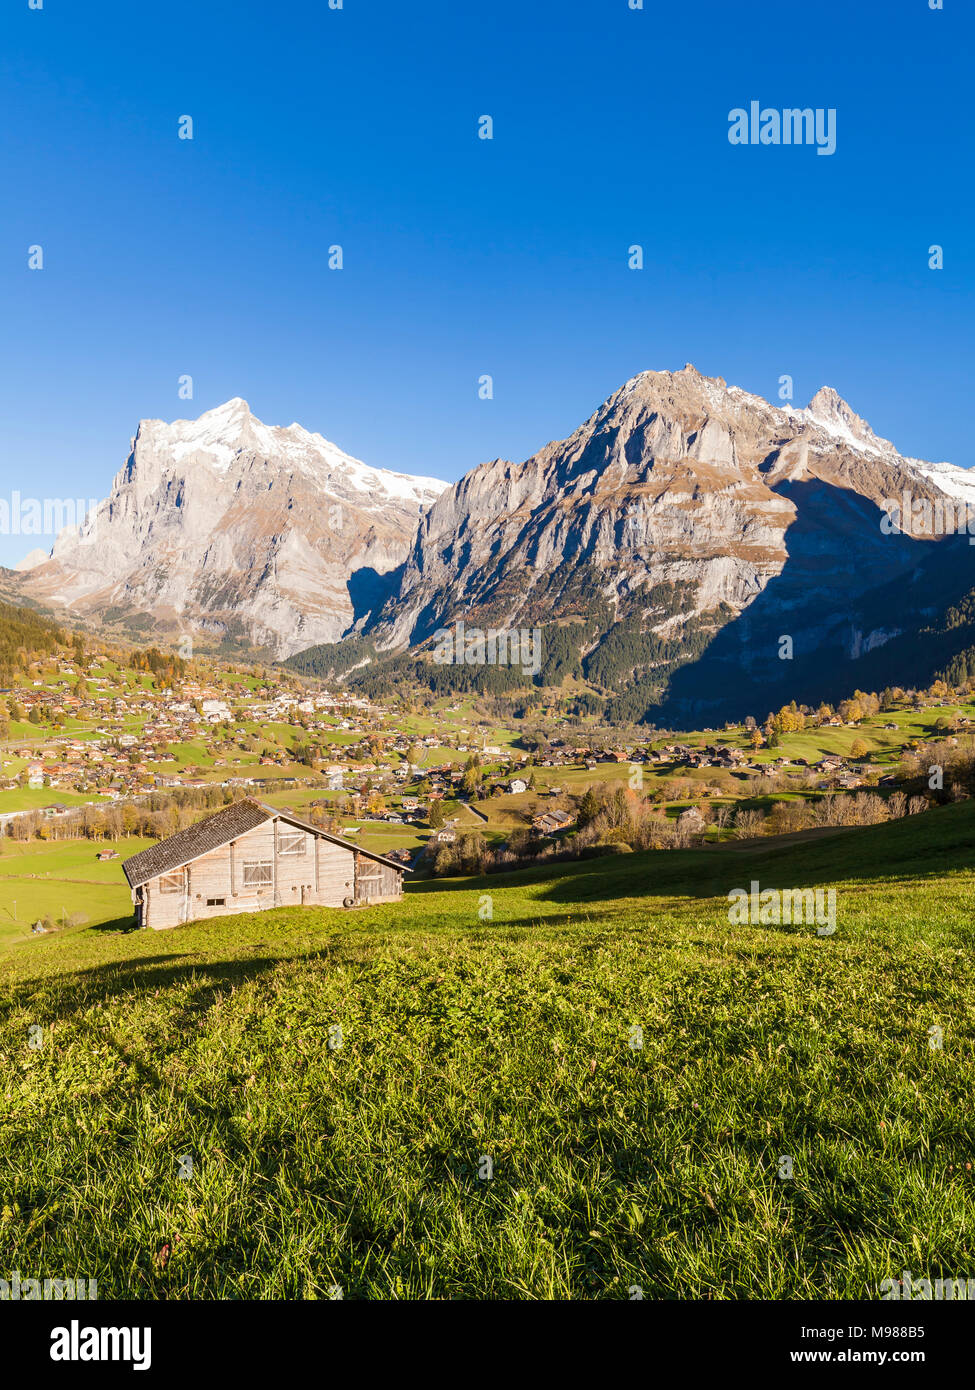 Schweiz, Kanton Bern, Berner Oberland, Grindelwald, Wetterhorn, Schreckhorn, Ferienort, Ortsansicht, Bauernhof, Scheune Stock Photo